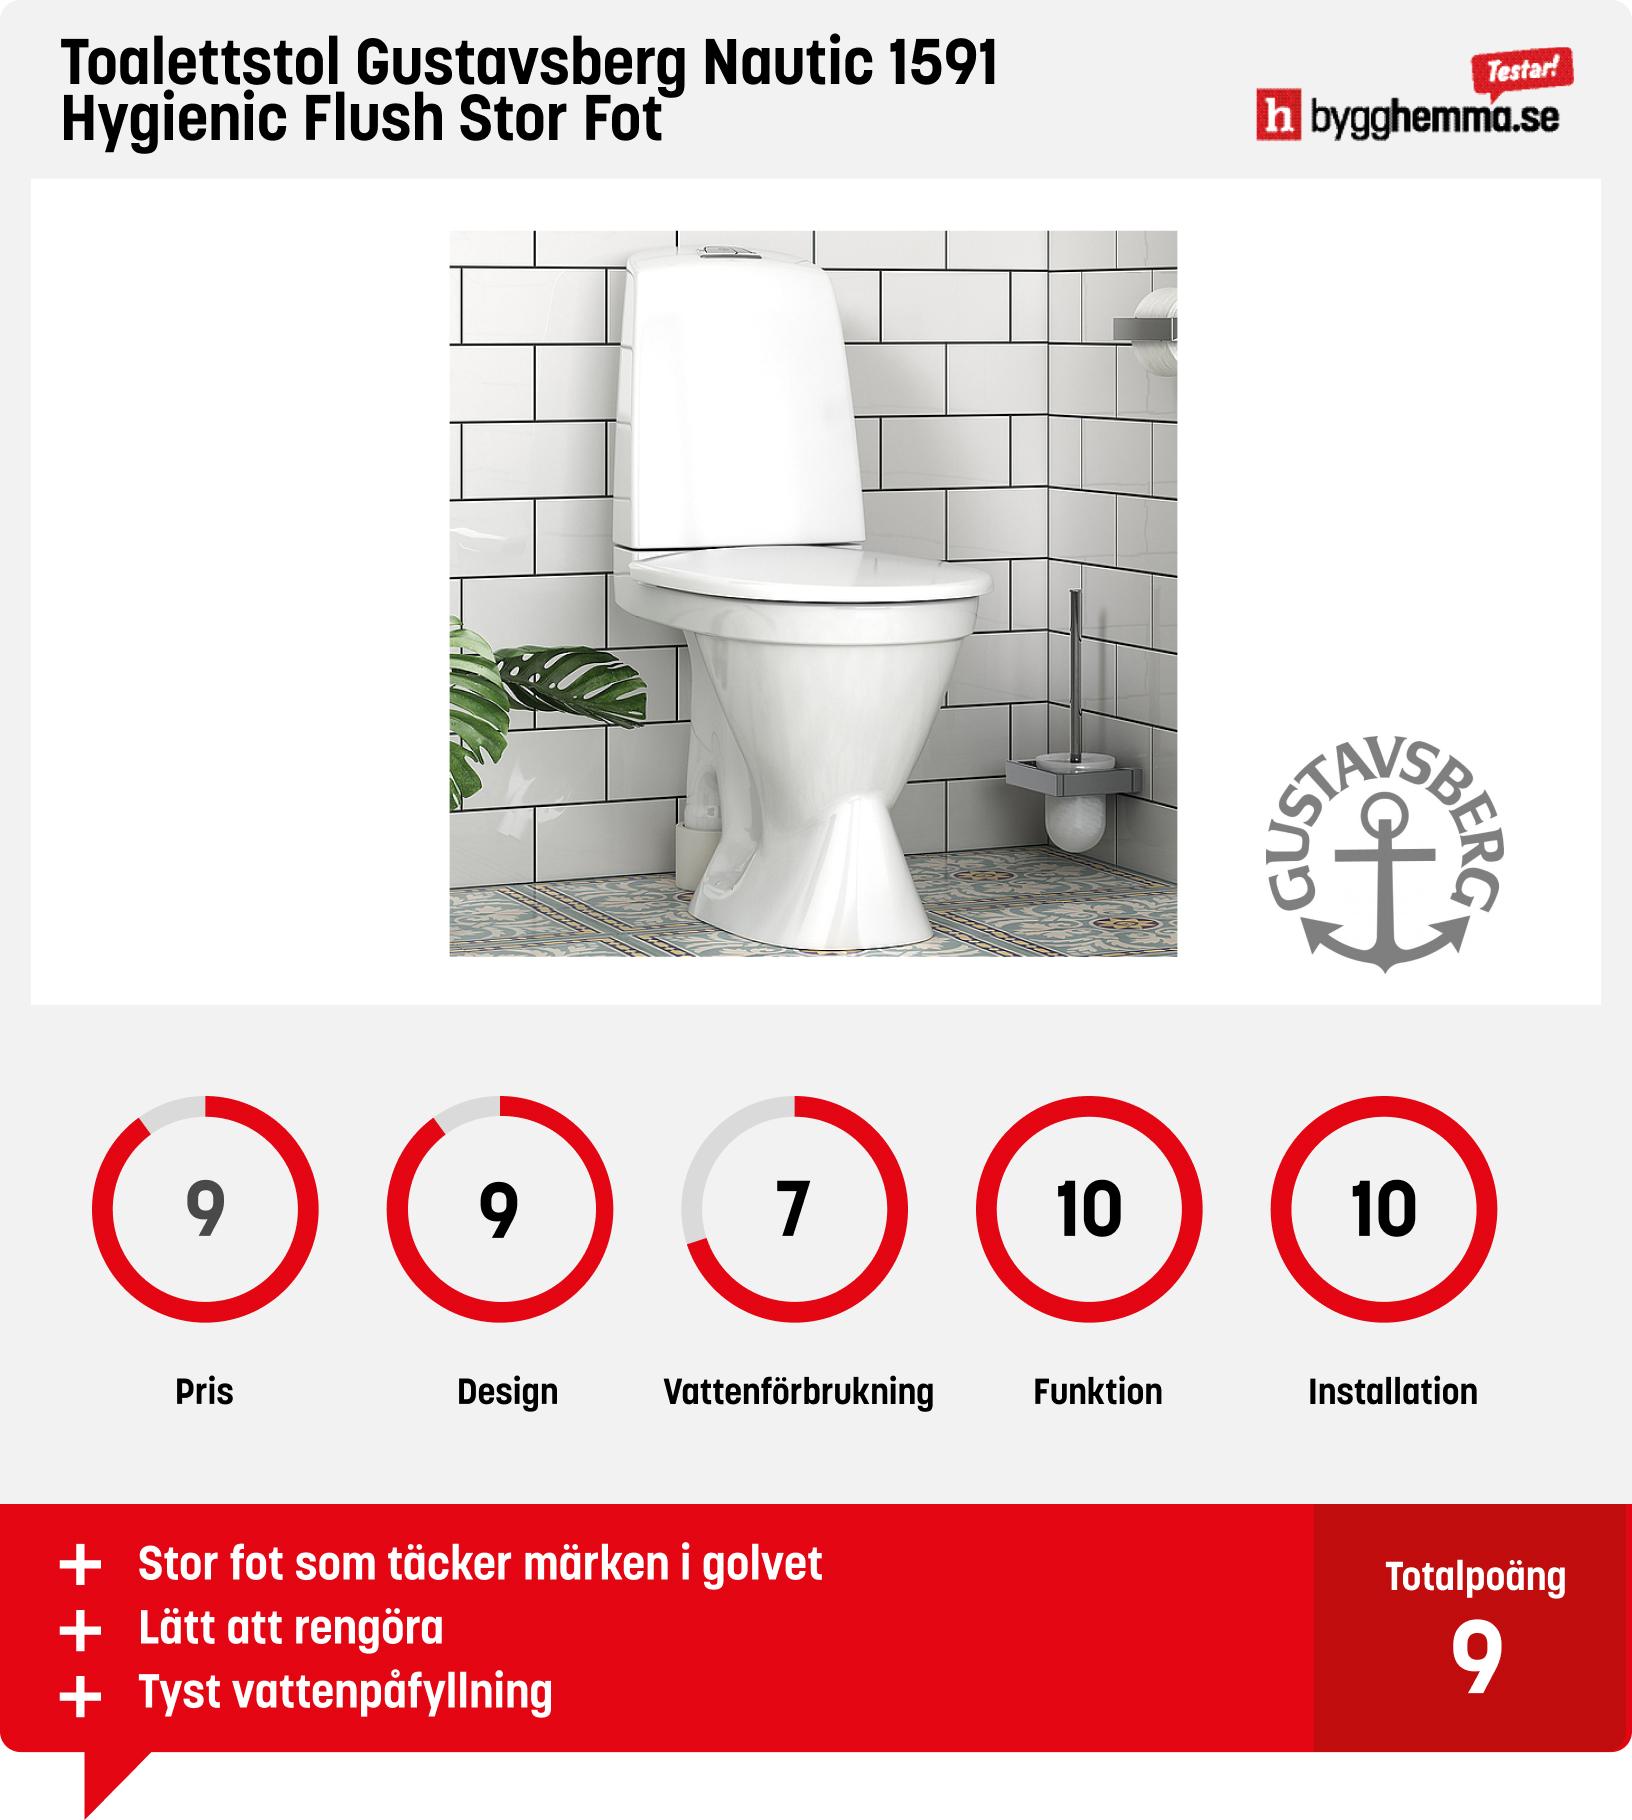 Snålspolande toalett - Toalettstol Gustavsberg Nautic 1591 Hygienic Flush Stor Fot